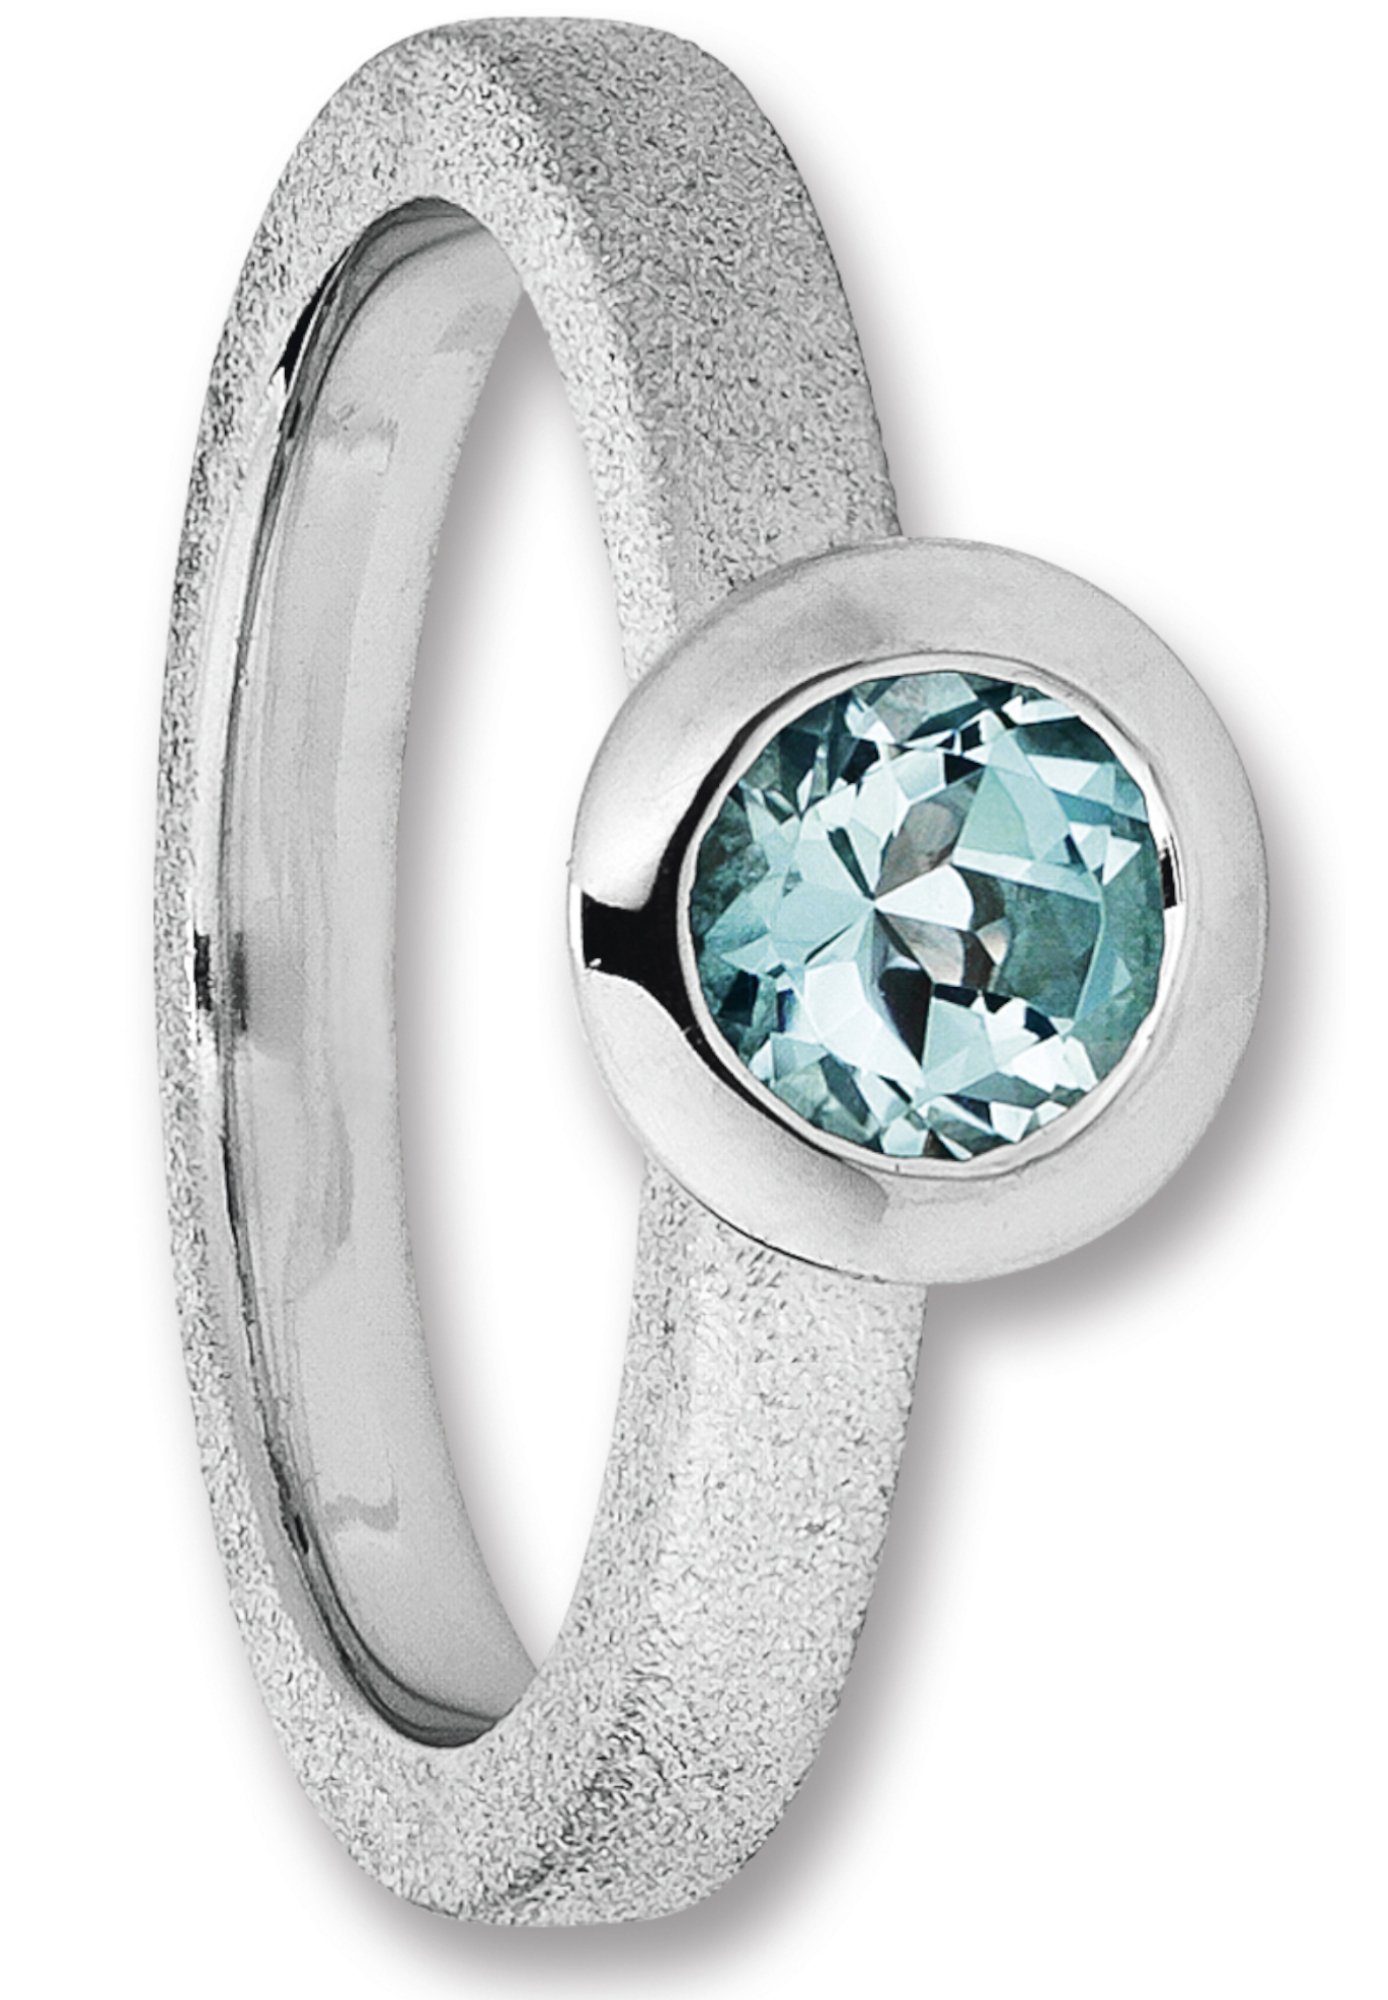 ONE ELEMENT Silberring Blau Topas Ring aus 925 Silber, Damen Silber  Schmuck, Mit Liebe gefertigt aus 925 Silber